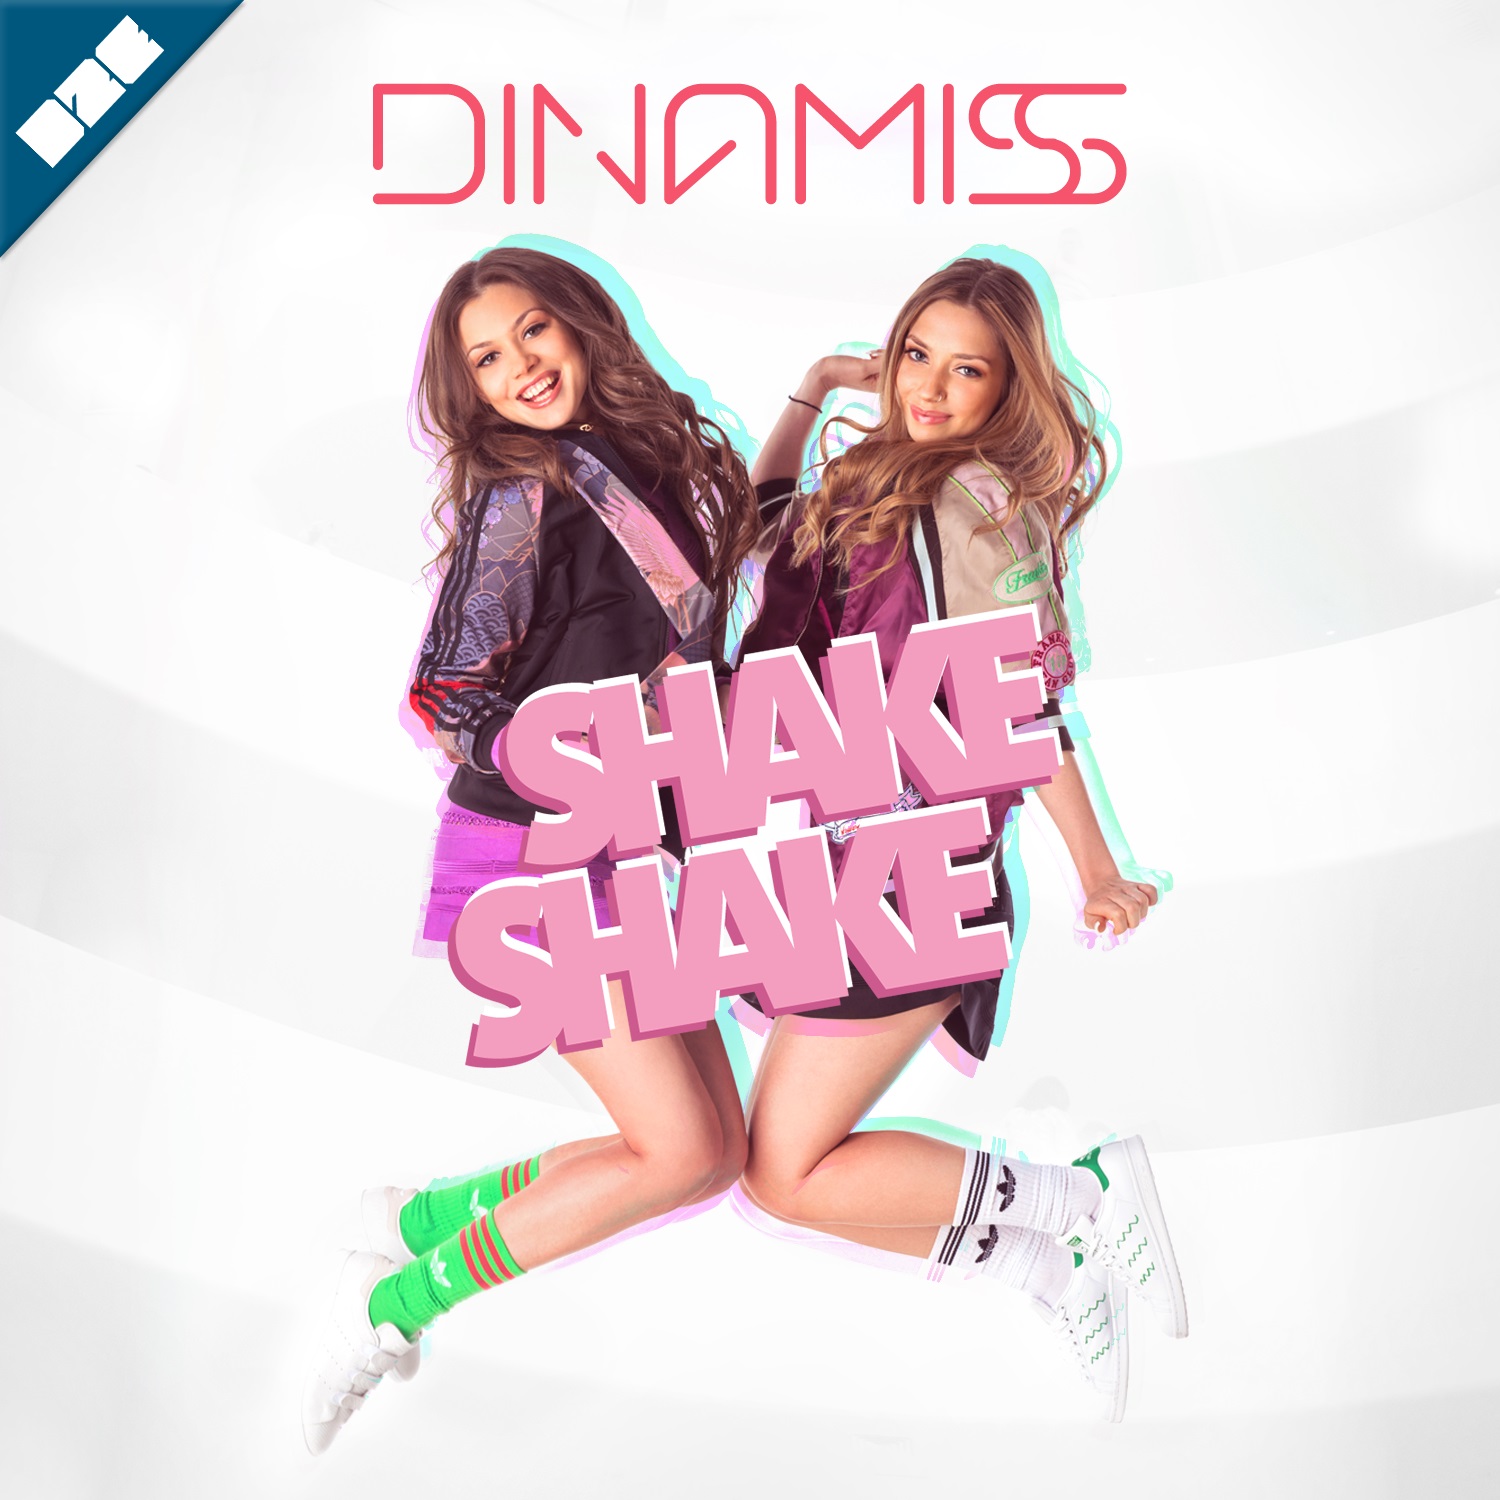 DINAMISS-shakeshake